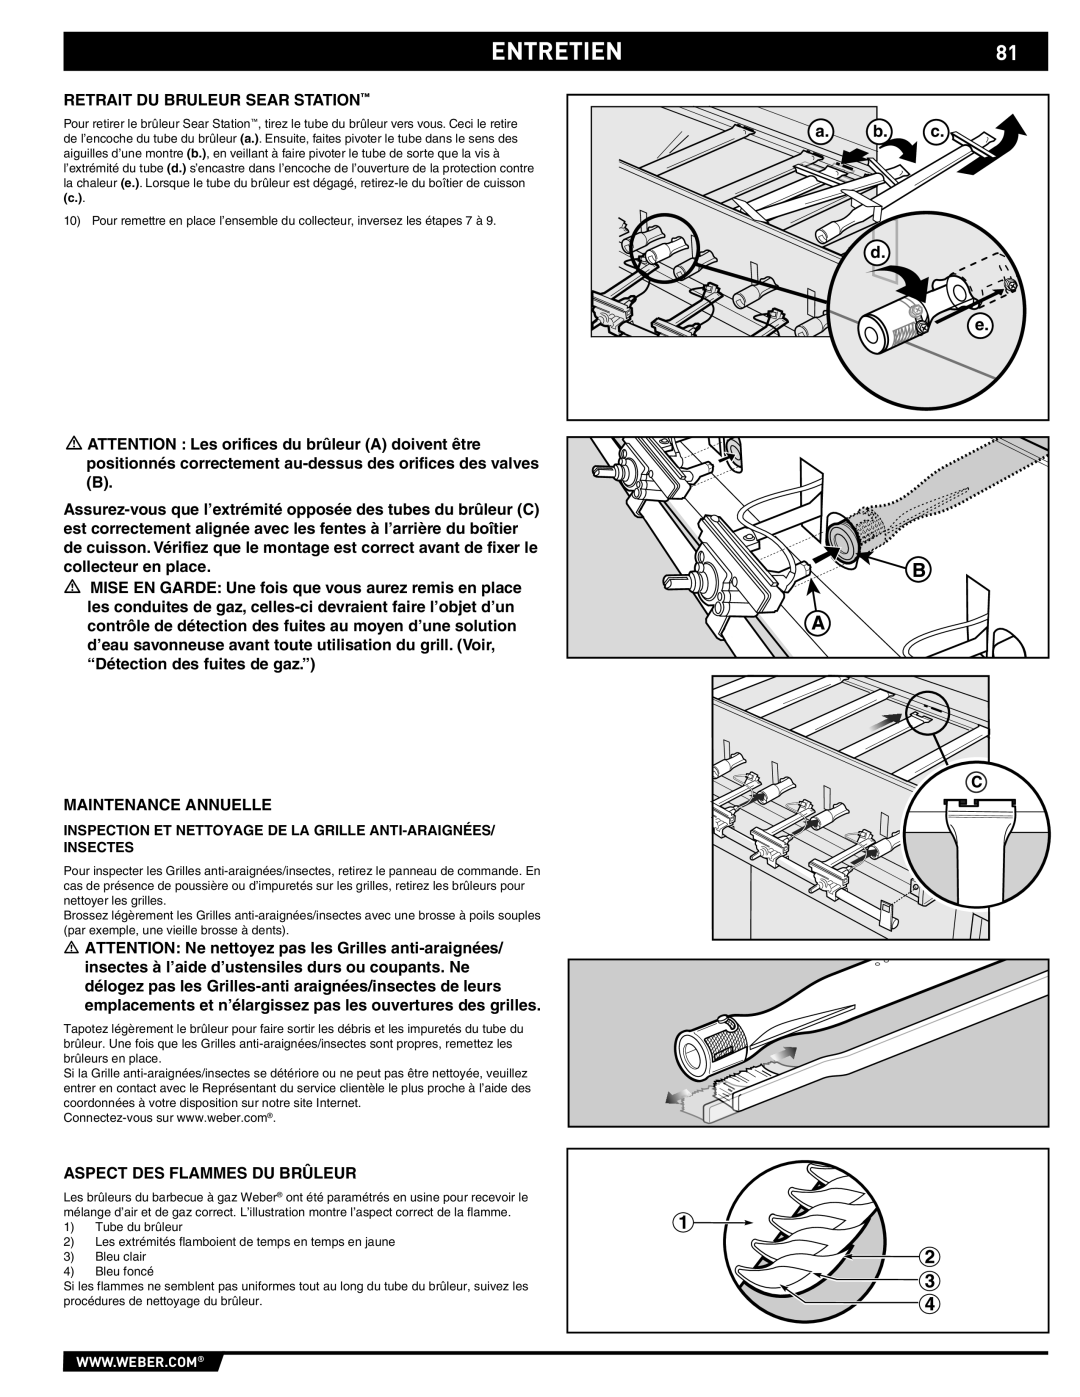 Weber S-470TM manual Entretien, a. b. c d e, Inspection Et Nettoyage De La Grille Anti-Araignées Insectes 